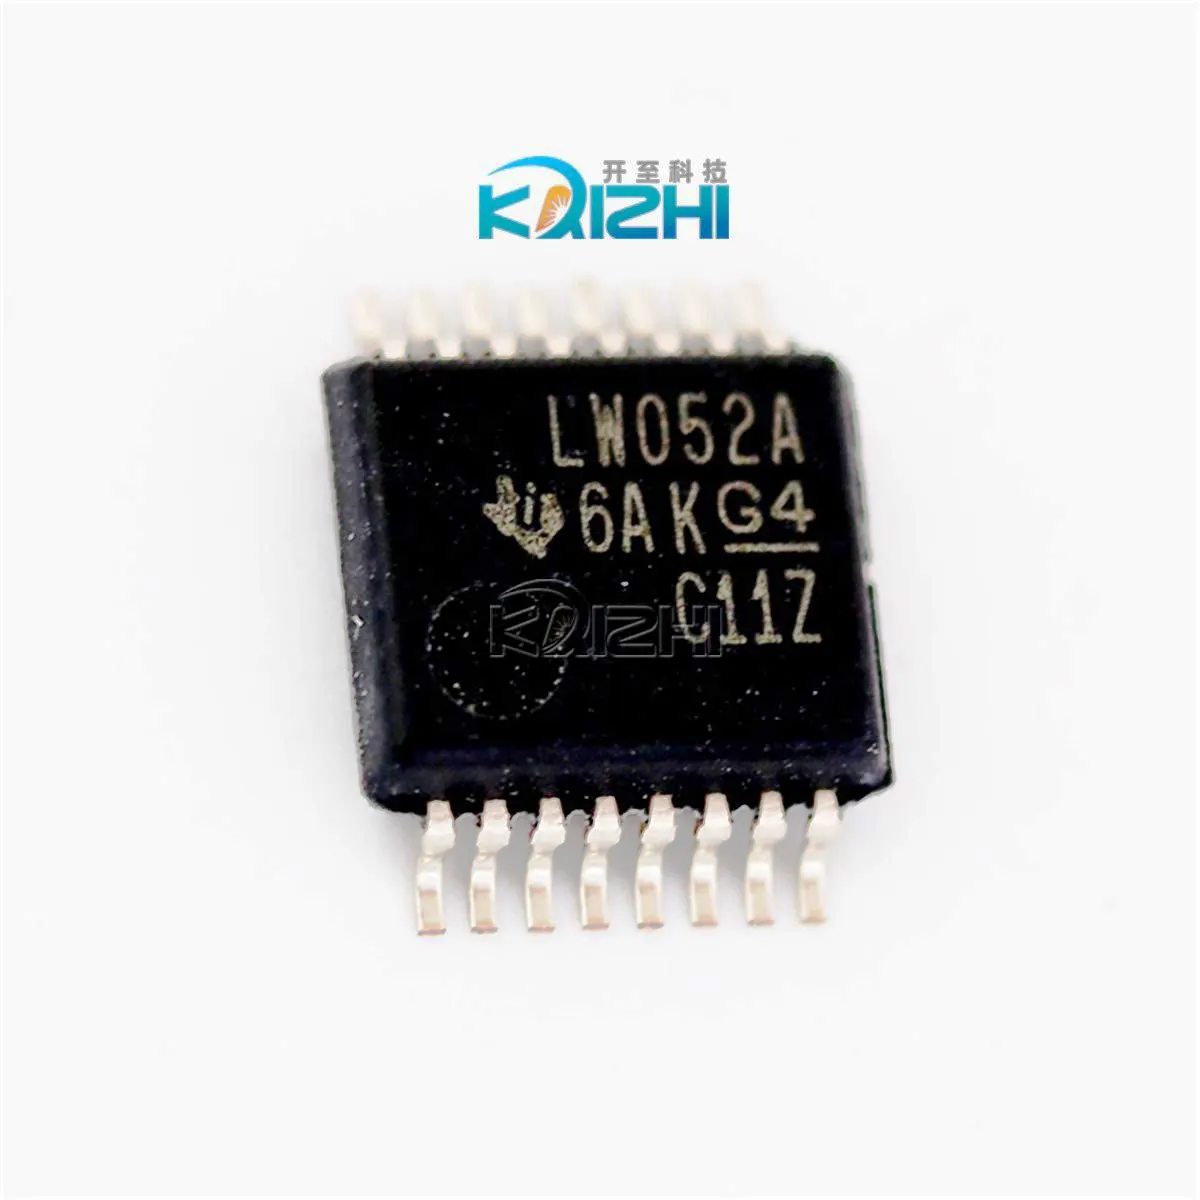 Original analoge Schalter/Multiplexer/Demultiplexer 16-SSOP-Chip für integrierte Schaltkreise IC SN74LV4052ADBR